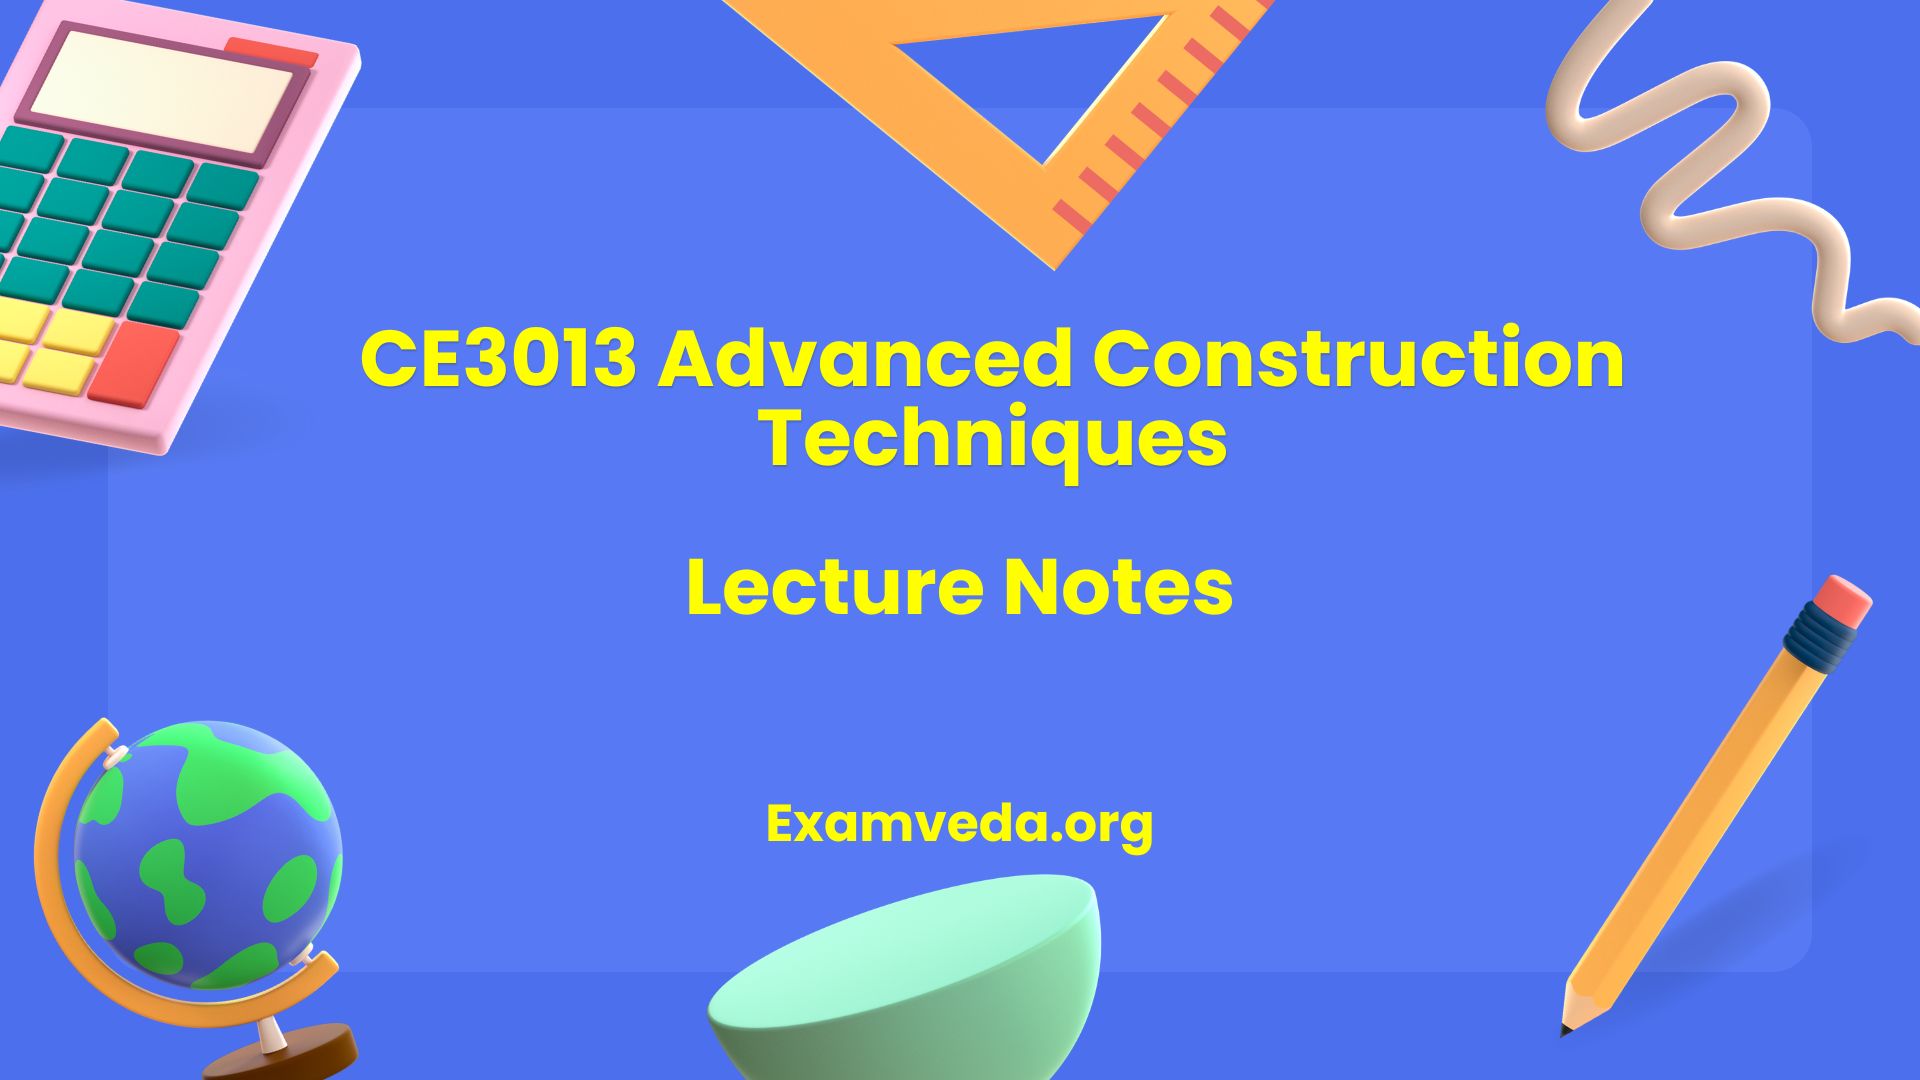 CE3013 Advanced Construction Techniques Lecture Notes